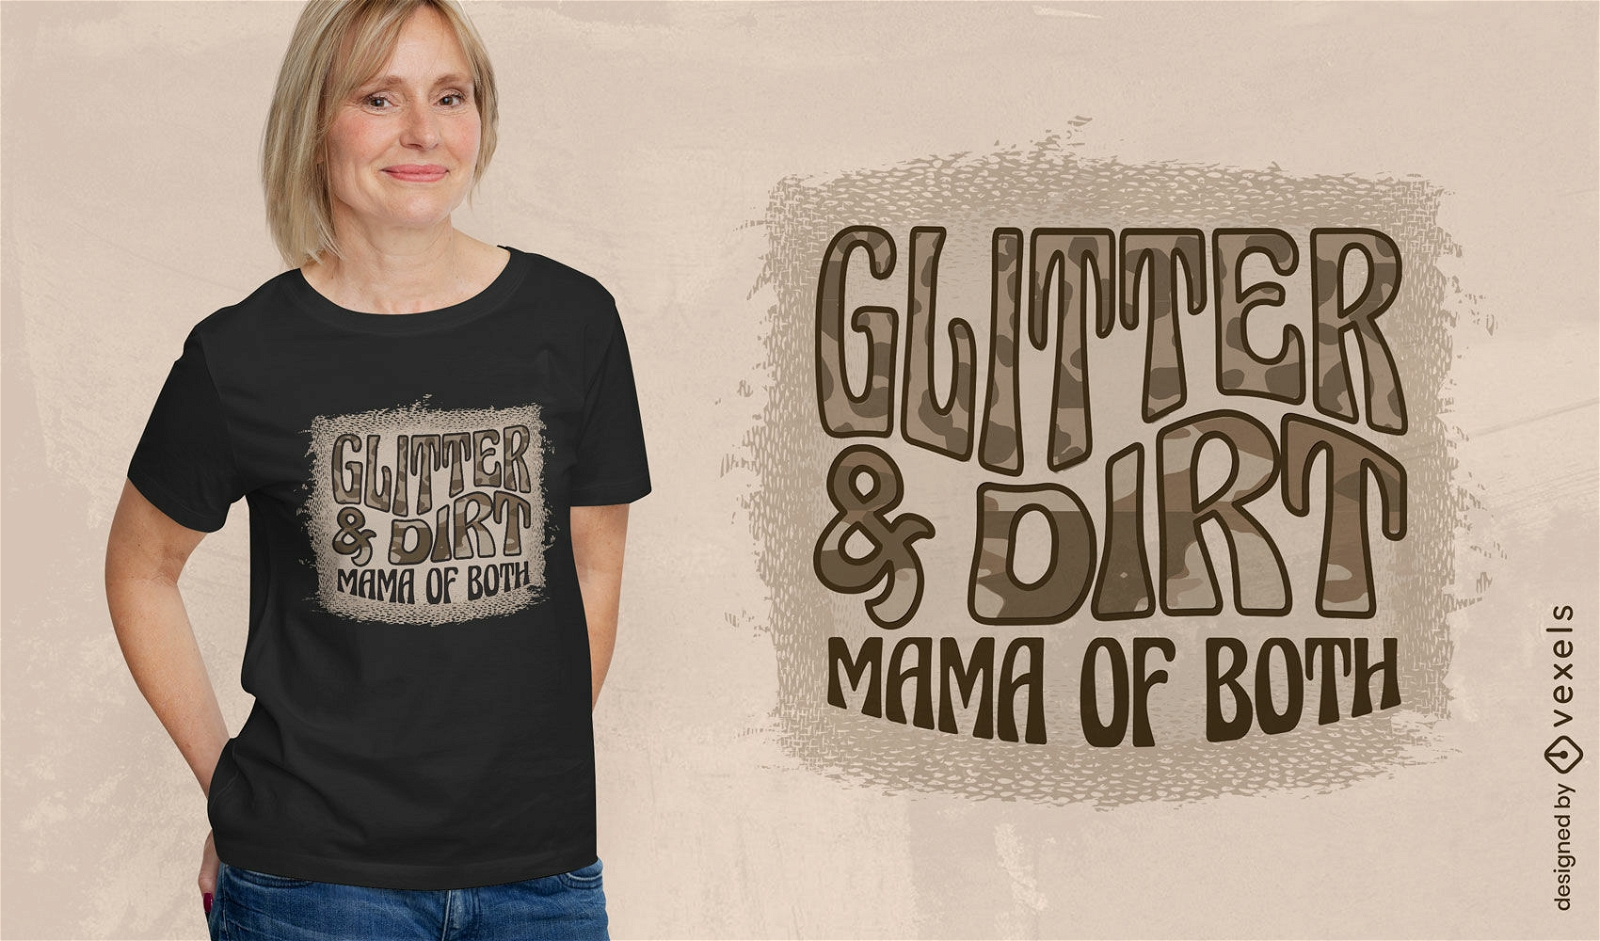 Glitter e sujeira mam?e em ambos os designs de camisetas